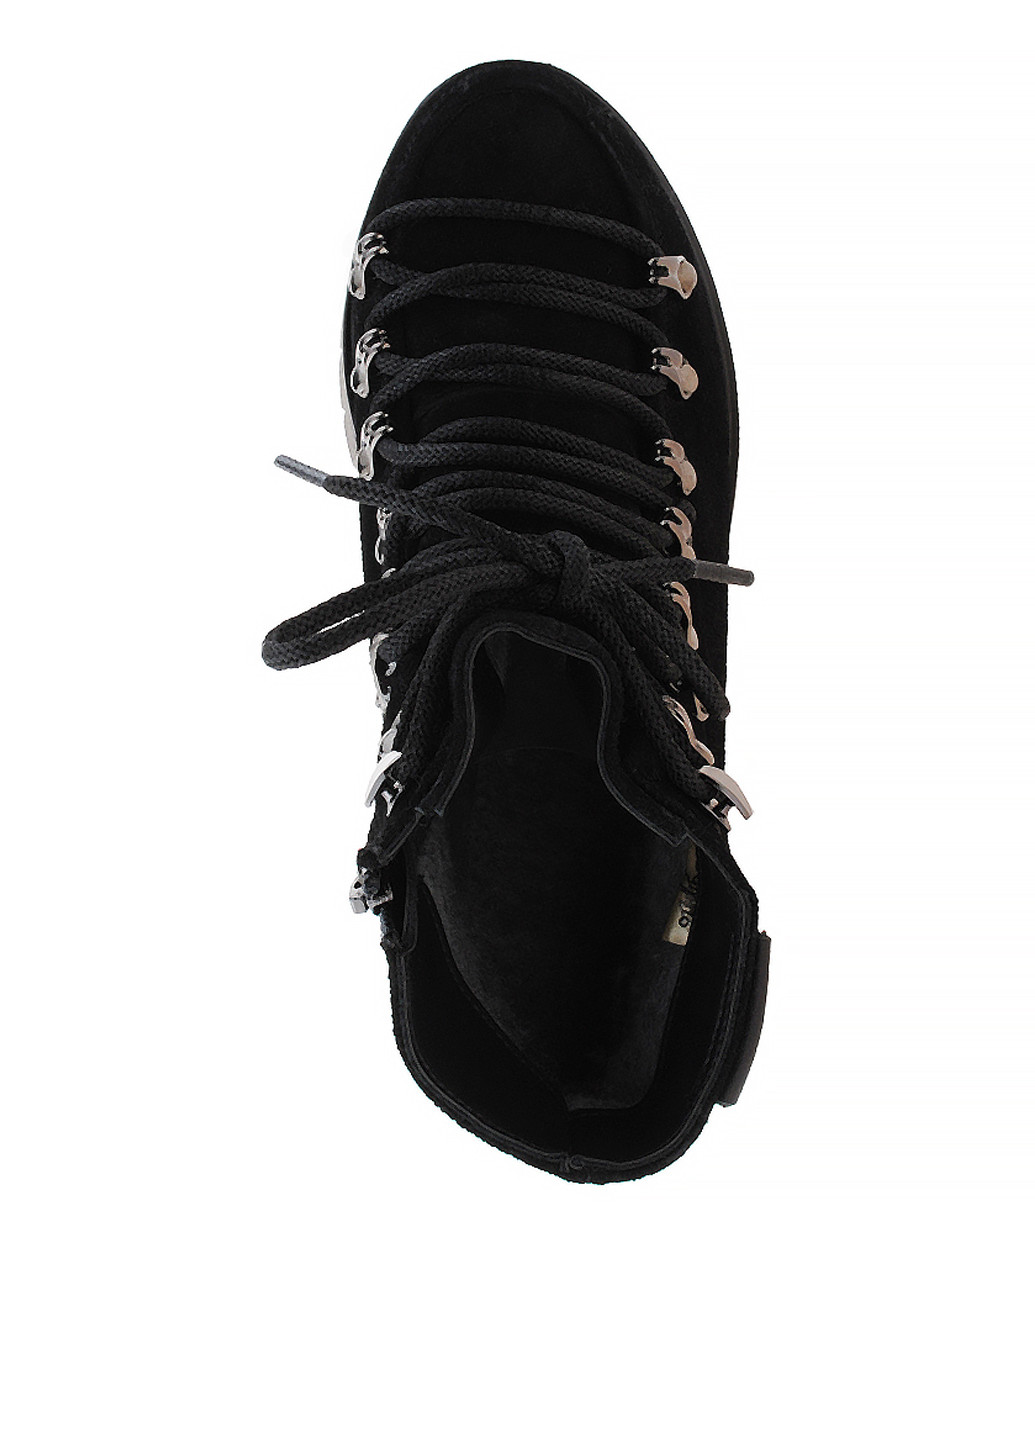 Осенние ботинки хайкеры Arcoboletto со шнуровкой из натуральной замши